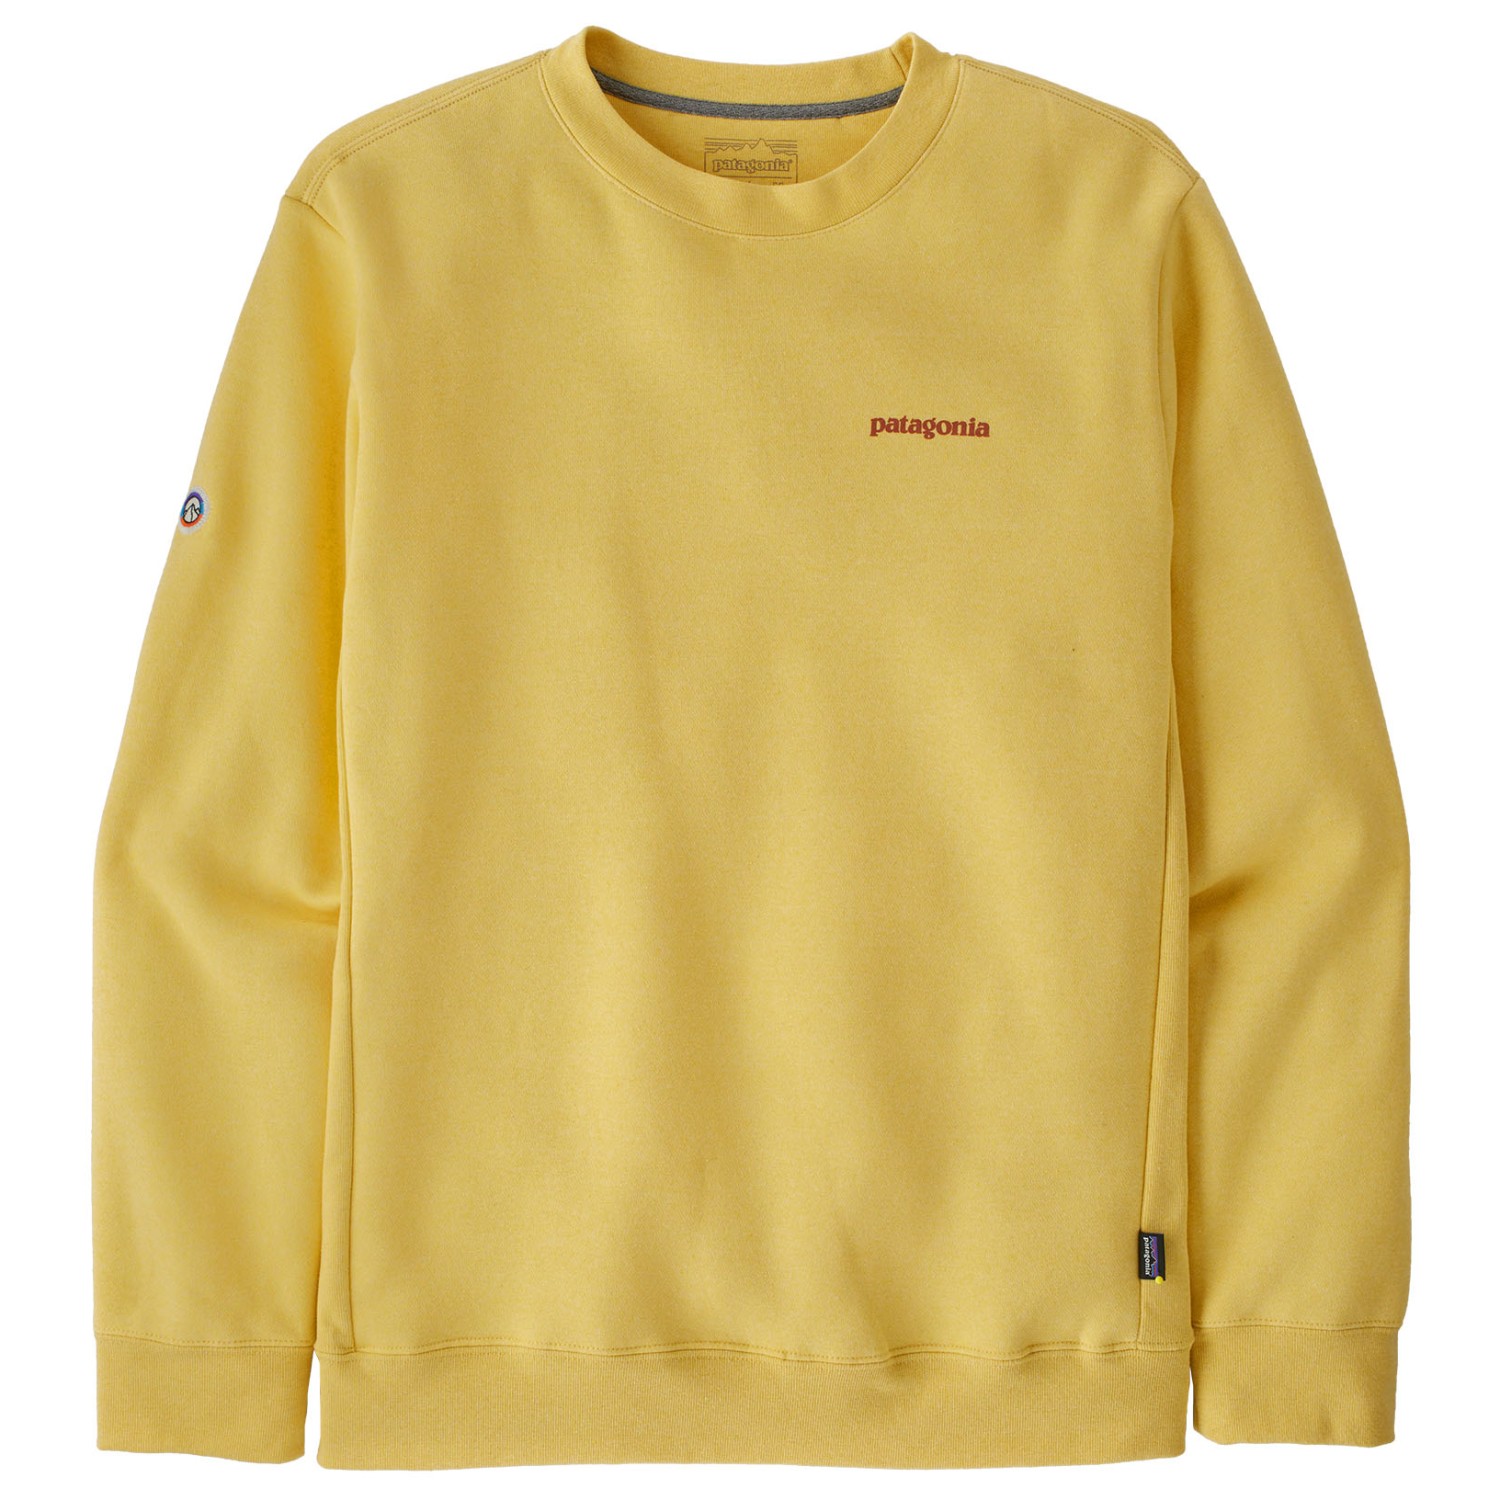 Пуловер Patagonia Fitz Roy Icon Uprisal Crew Sweatshirt, цвет Milled Yellow толстовка fitz roy icon uprisal crew patagonia цвет milled yellow